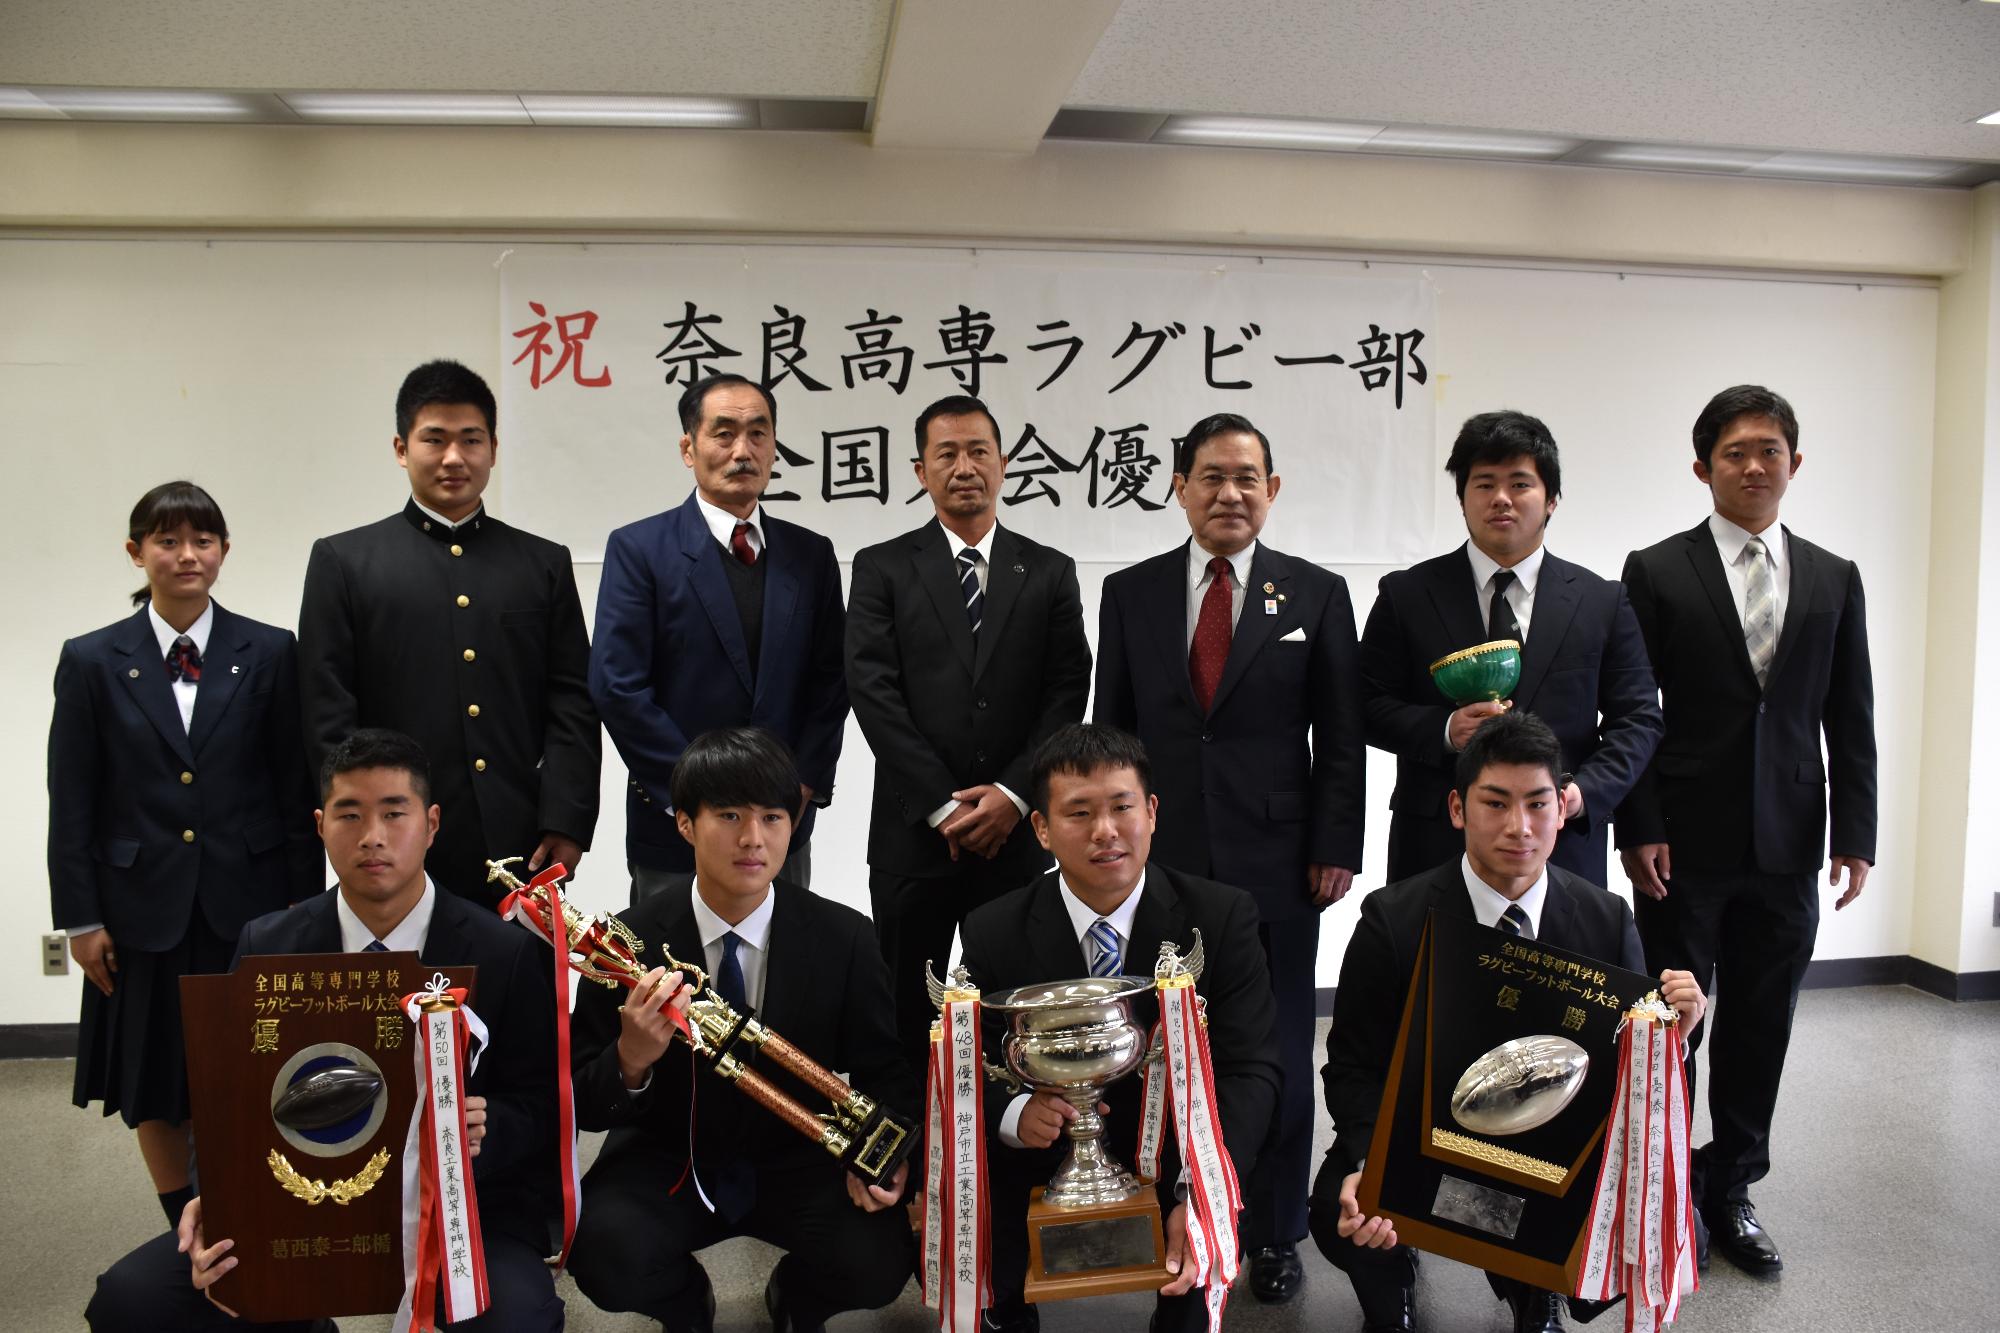 市長と記念写真を撮る奈良高専ラグビー部の監督と選手とマネージャー